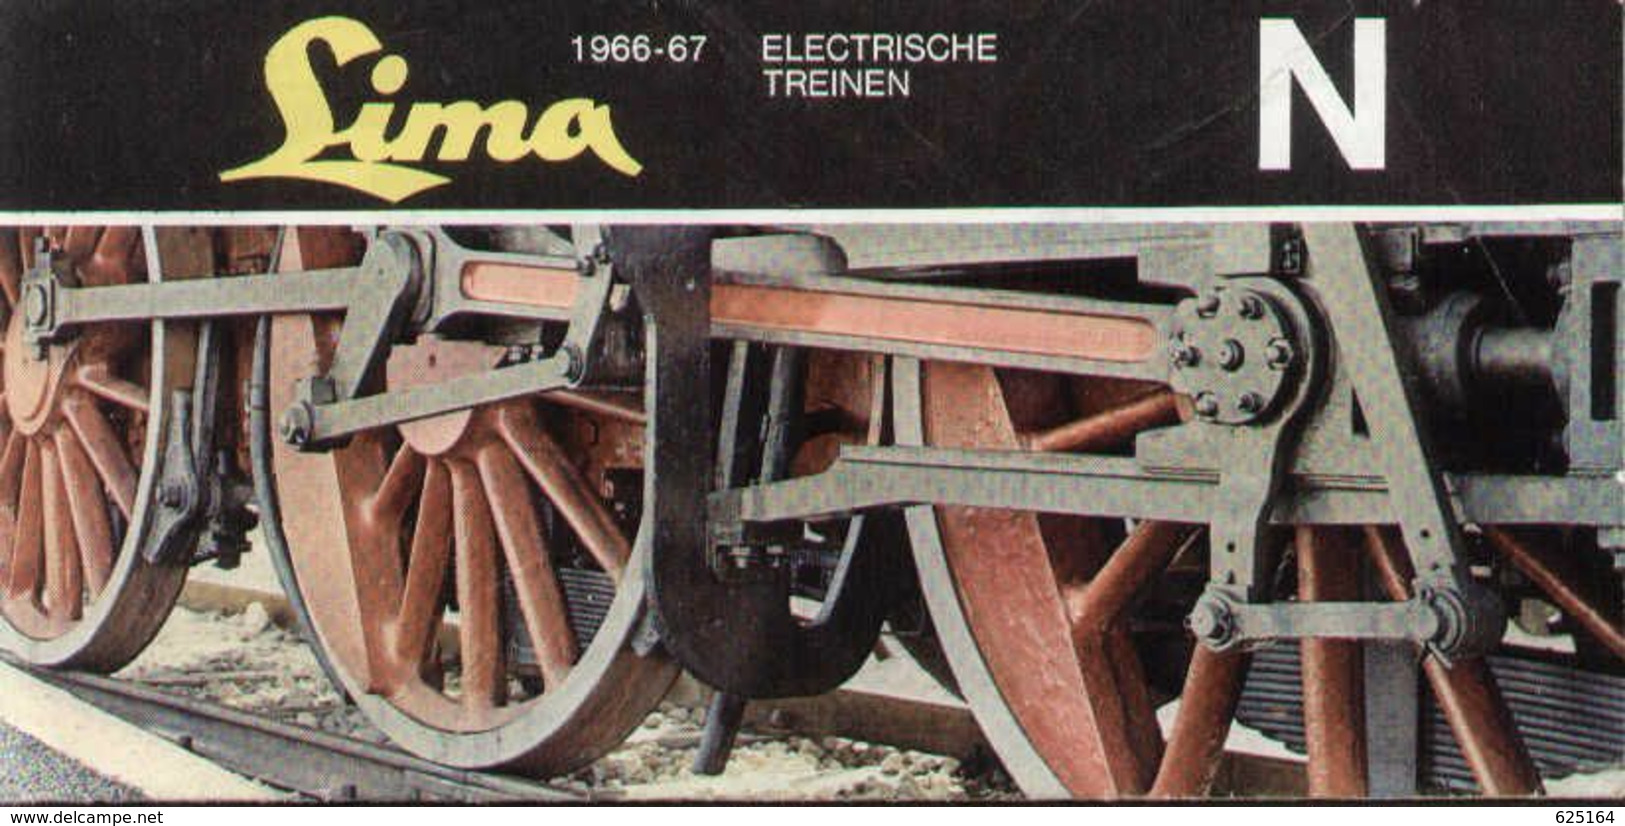 Catalogue LIMA 1966/67 Electrische Treinen N 1/160 - Fiammingo